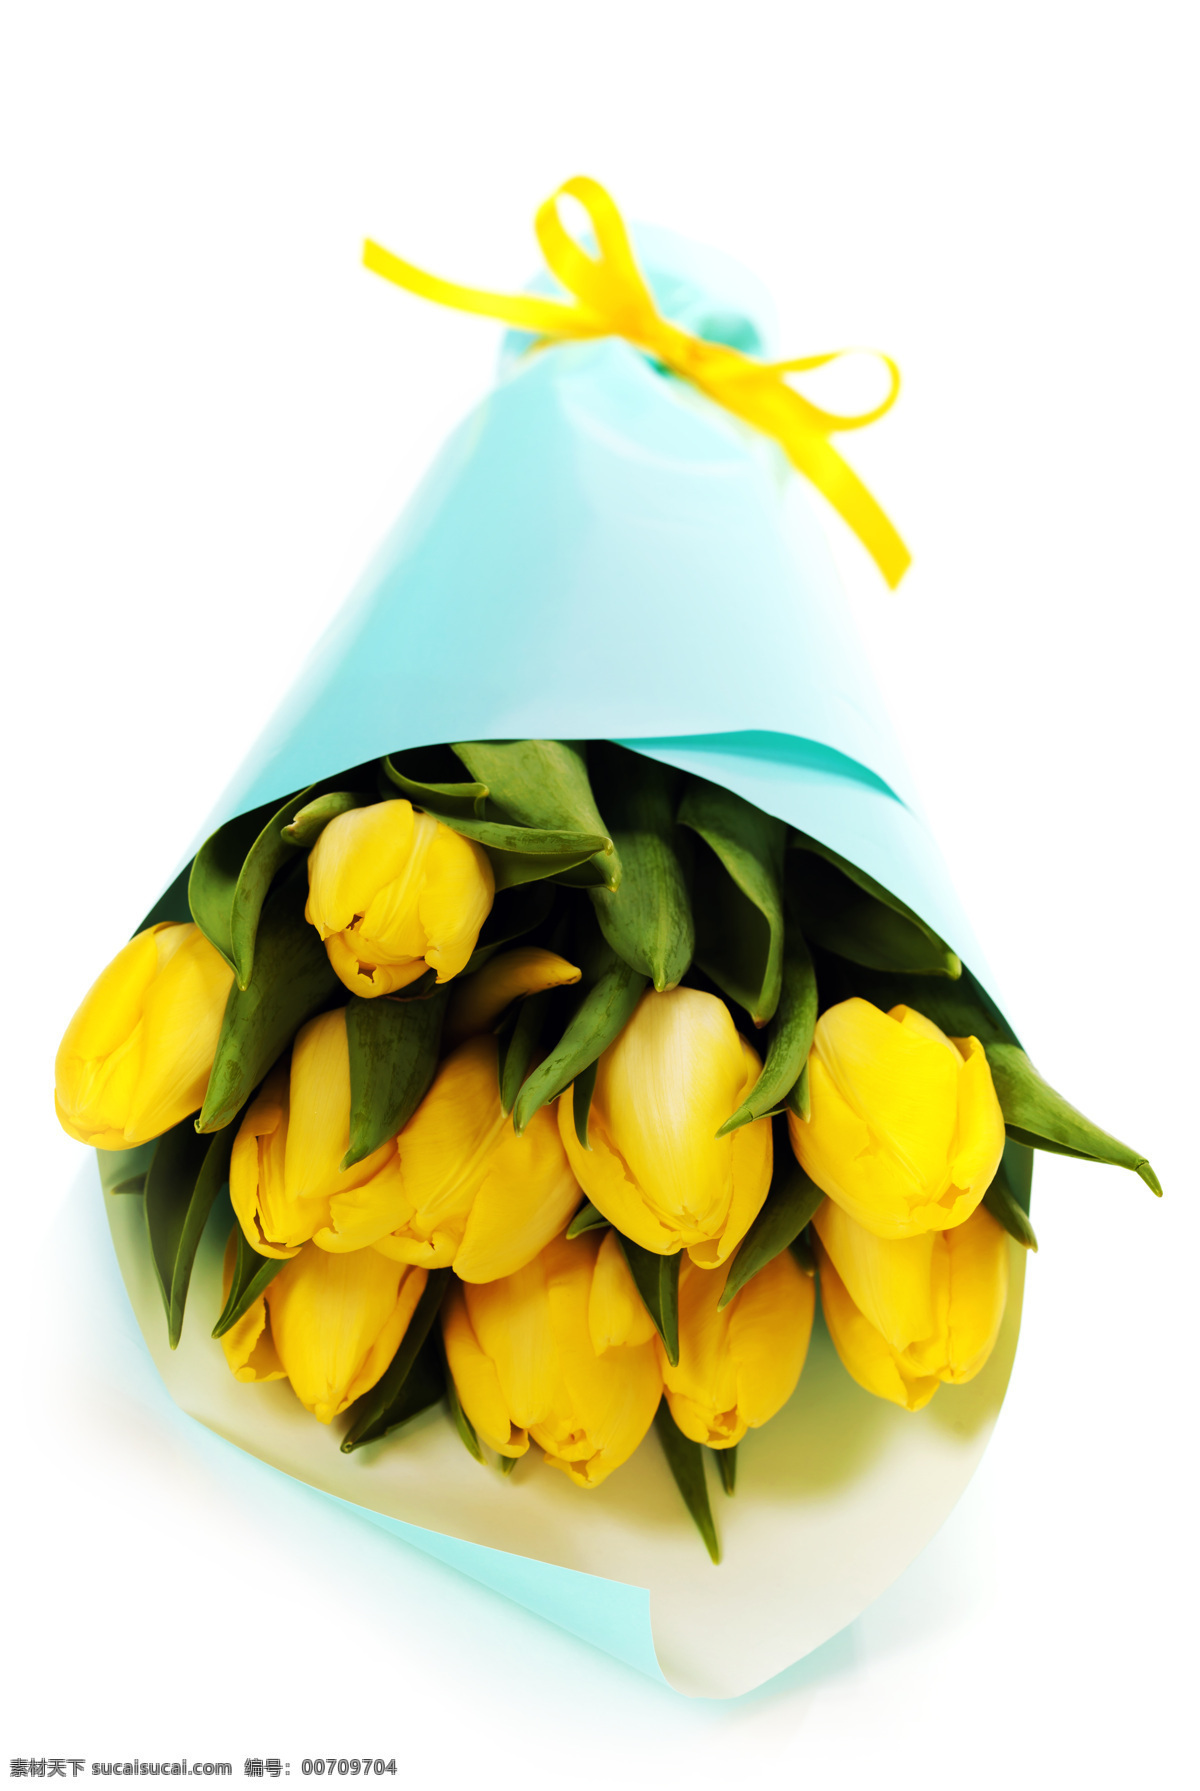 束 黄色 郁金香 复活节 彩蛋 花束 鲜花 花卉 花朵 美丽鲜花 美丽花朵 花草树木 生物世界